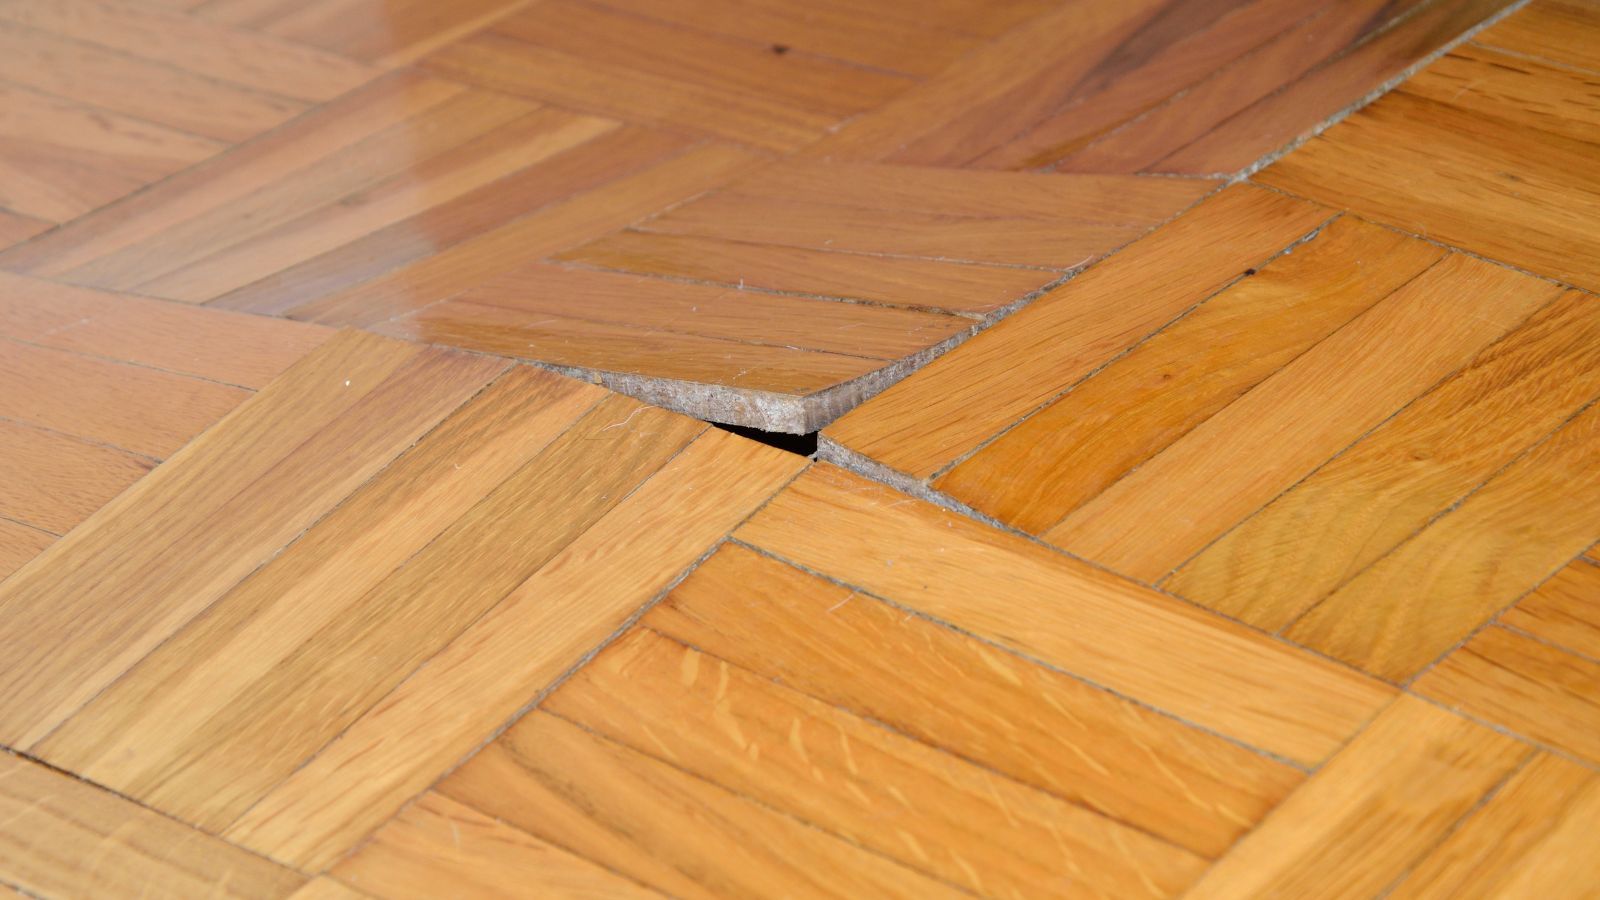 warped floor due to hidden leak under slab